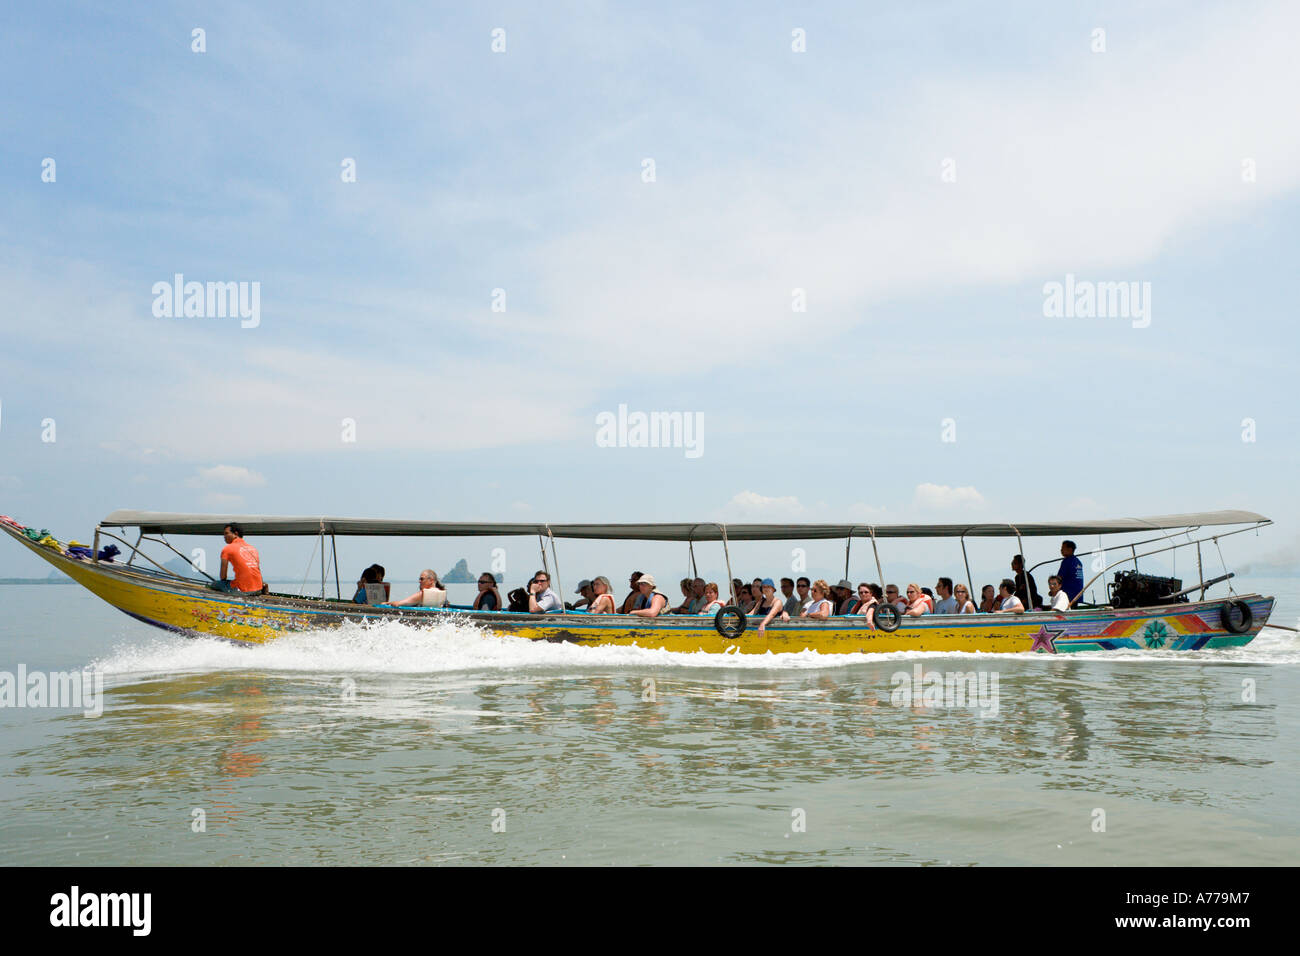 Longtail Boat Trip to James Bond Island, Ao Phang Nga National Park, Phang Nga, Thailand Stock Photo